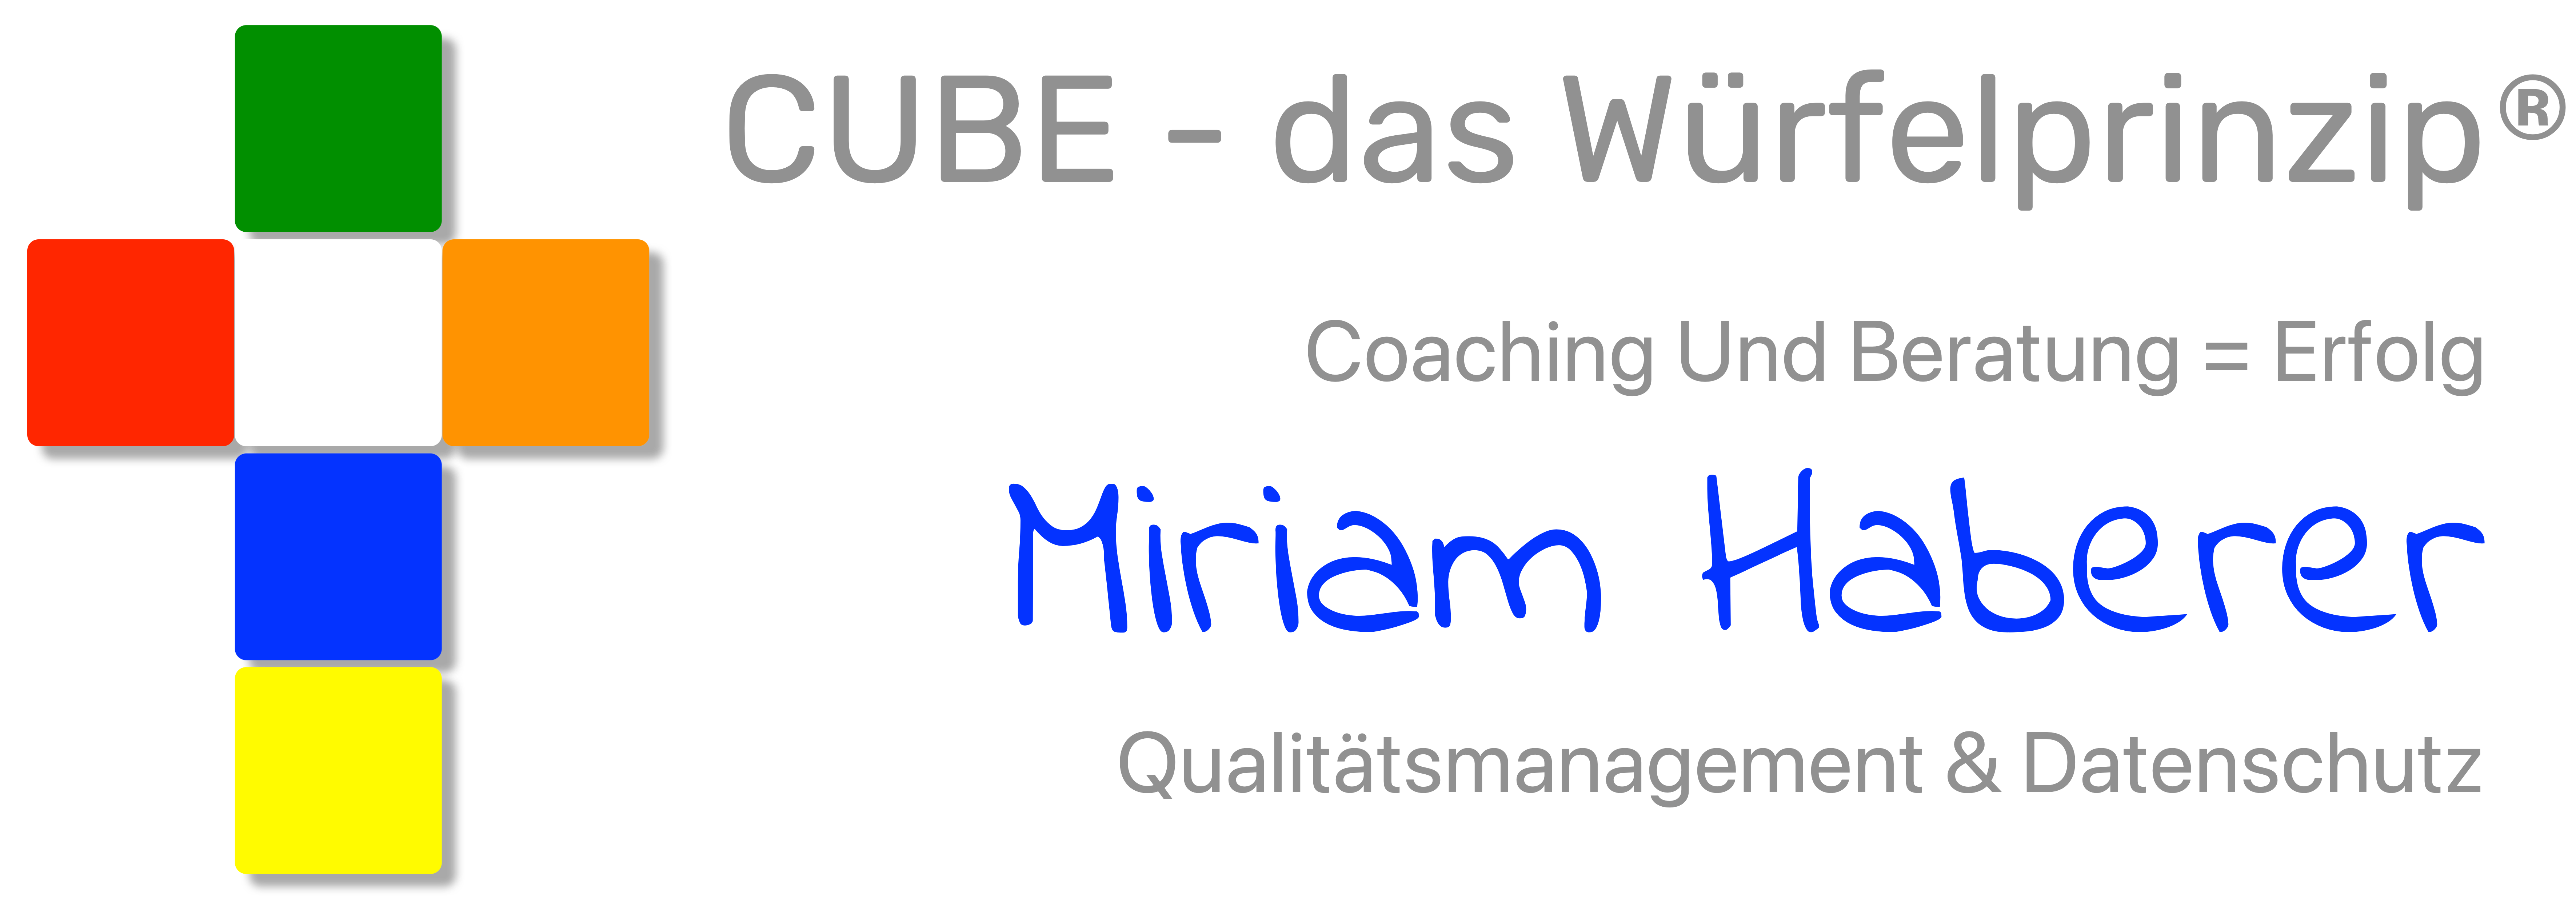 CUBE - das Würfelprinzip Qualitätsmanagement und Datenschutz - Miriam Haberer